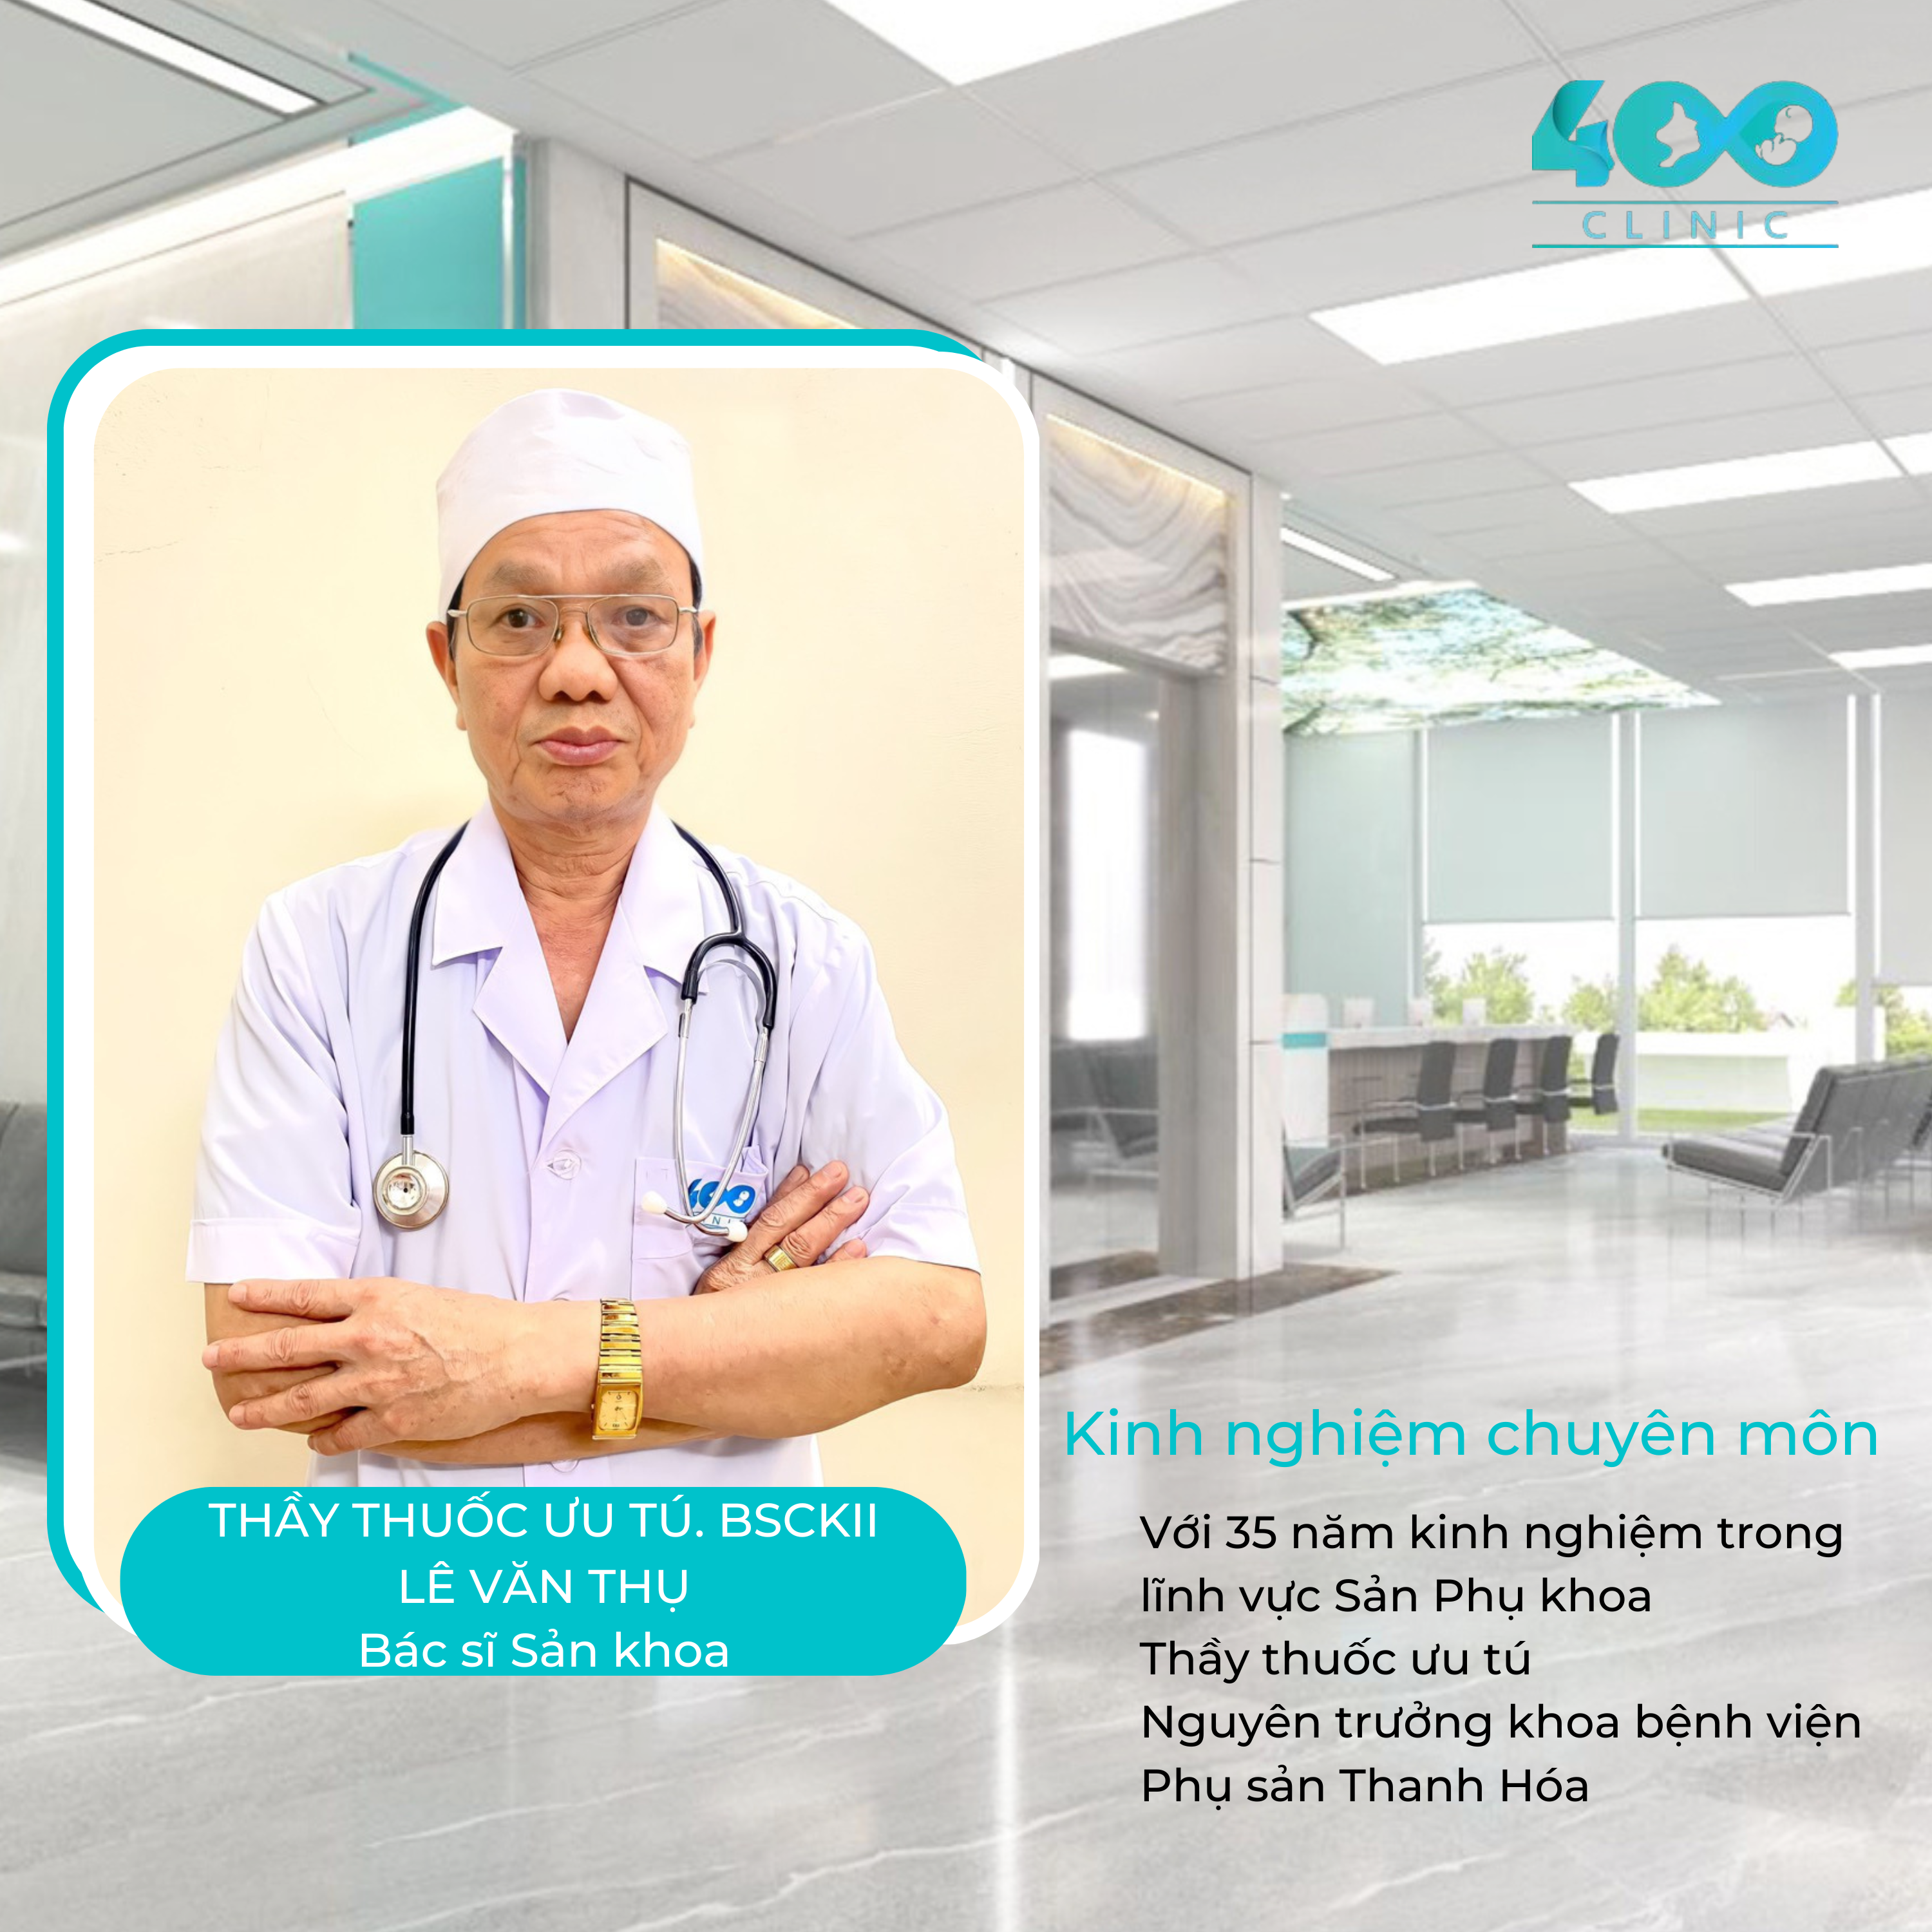 Thầy thuốc ưu tú – Bác sĩ CKII Lê Văn Thụ – Nguyên trưởng phòng KHTH – Bệnh viện Phụ sản Thanh Hoá